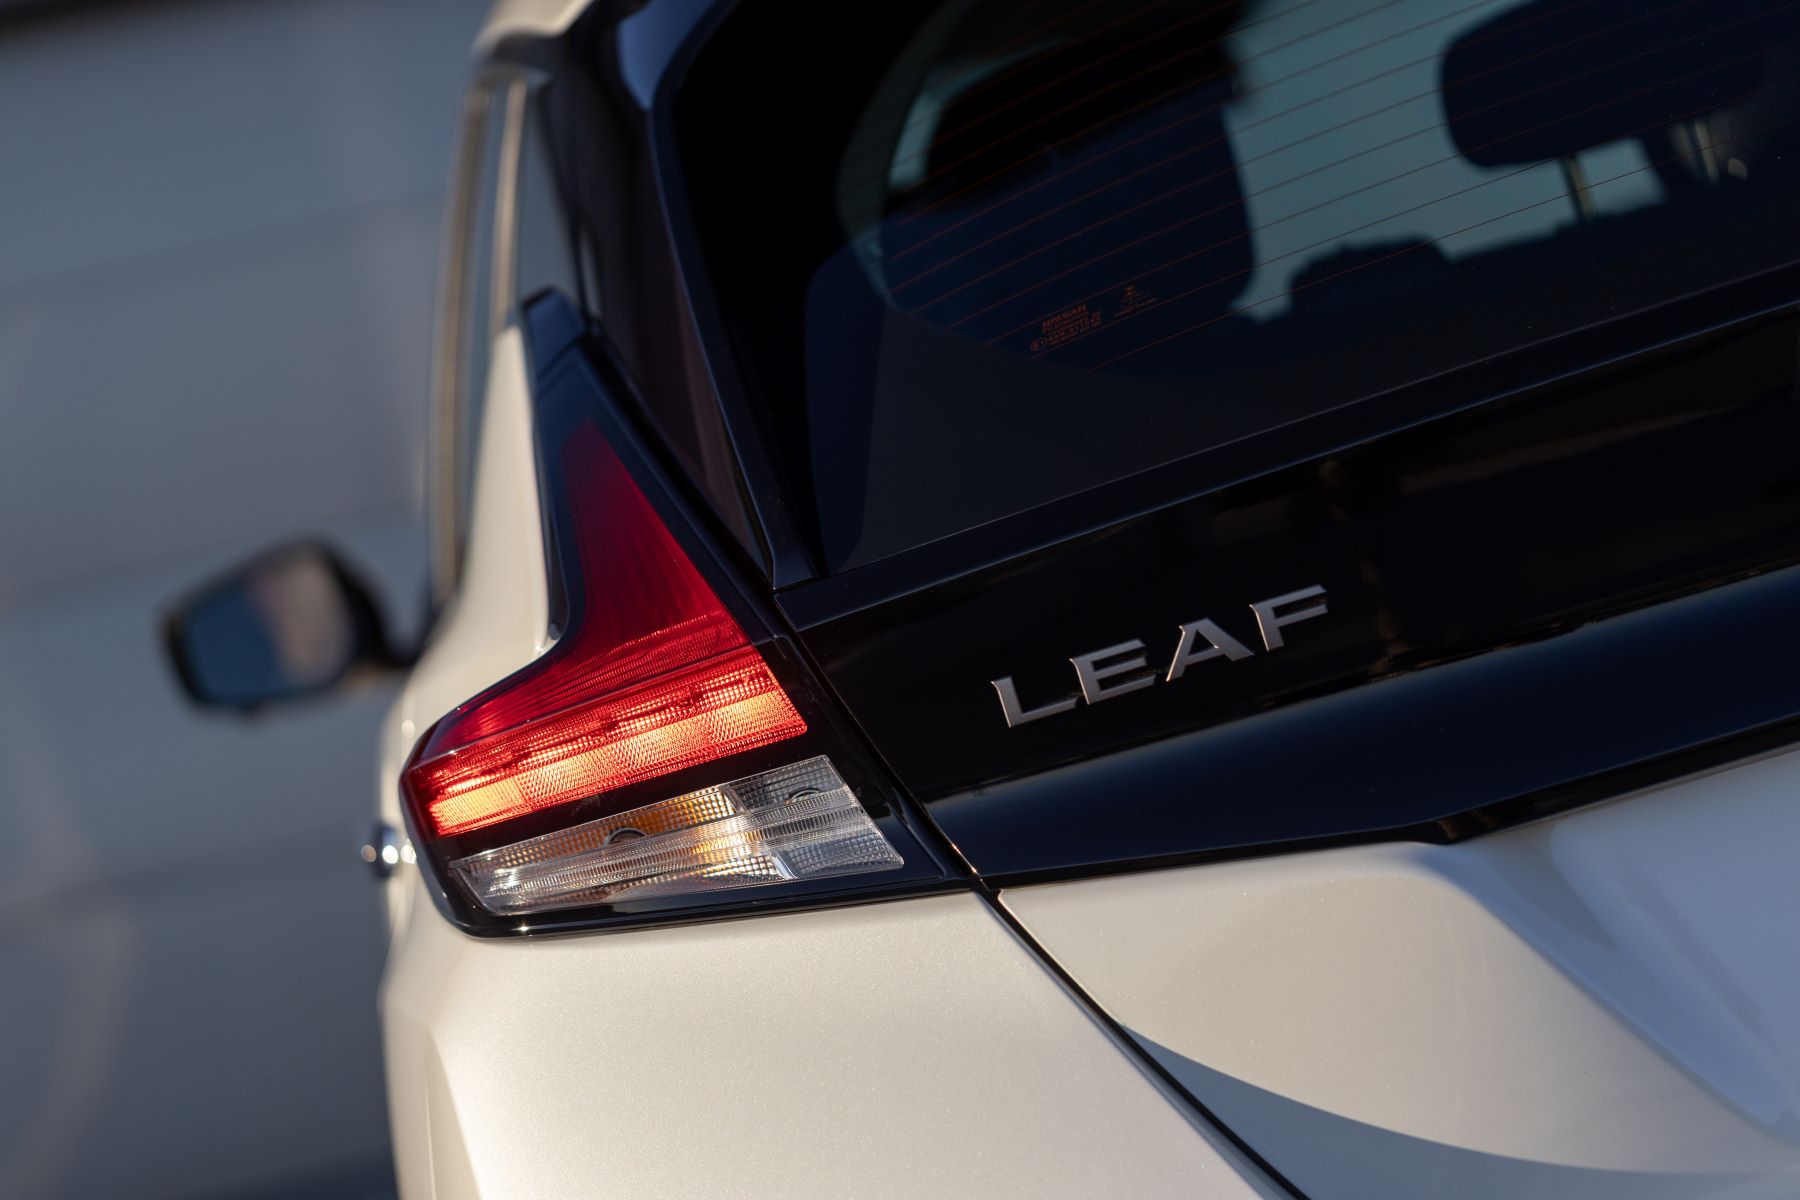 Rear model badging for the 2023 Nissan Leaf all-electric hatchback model